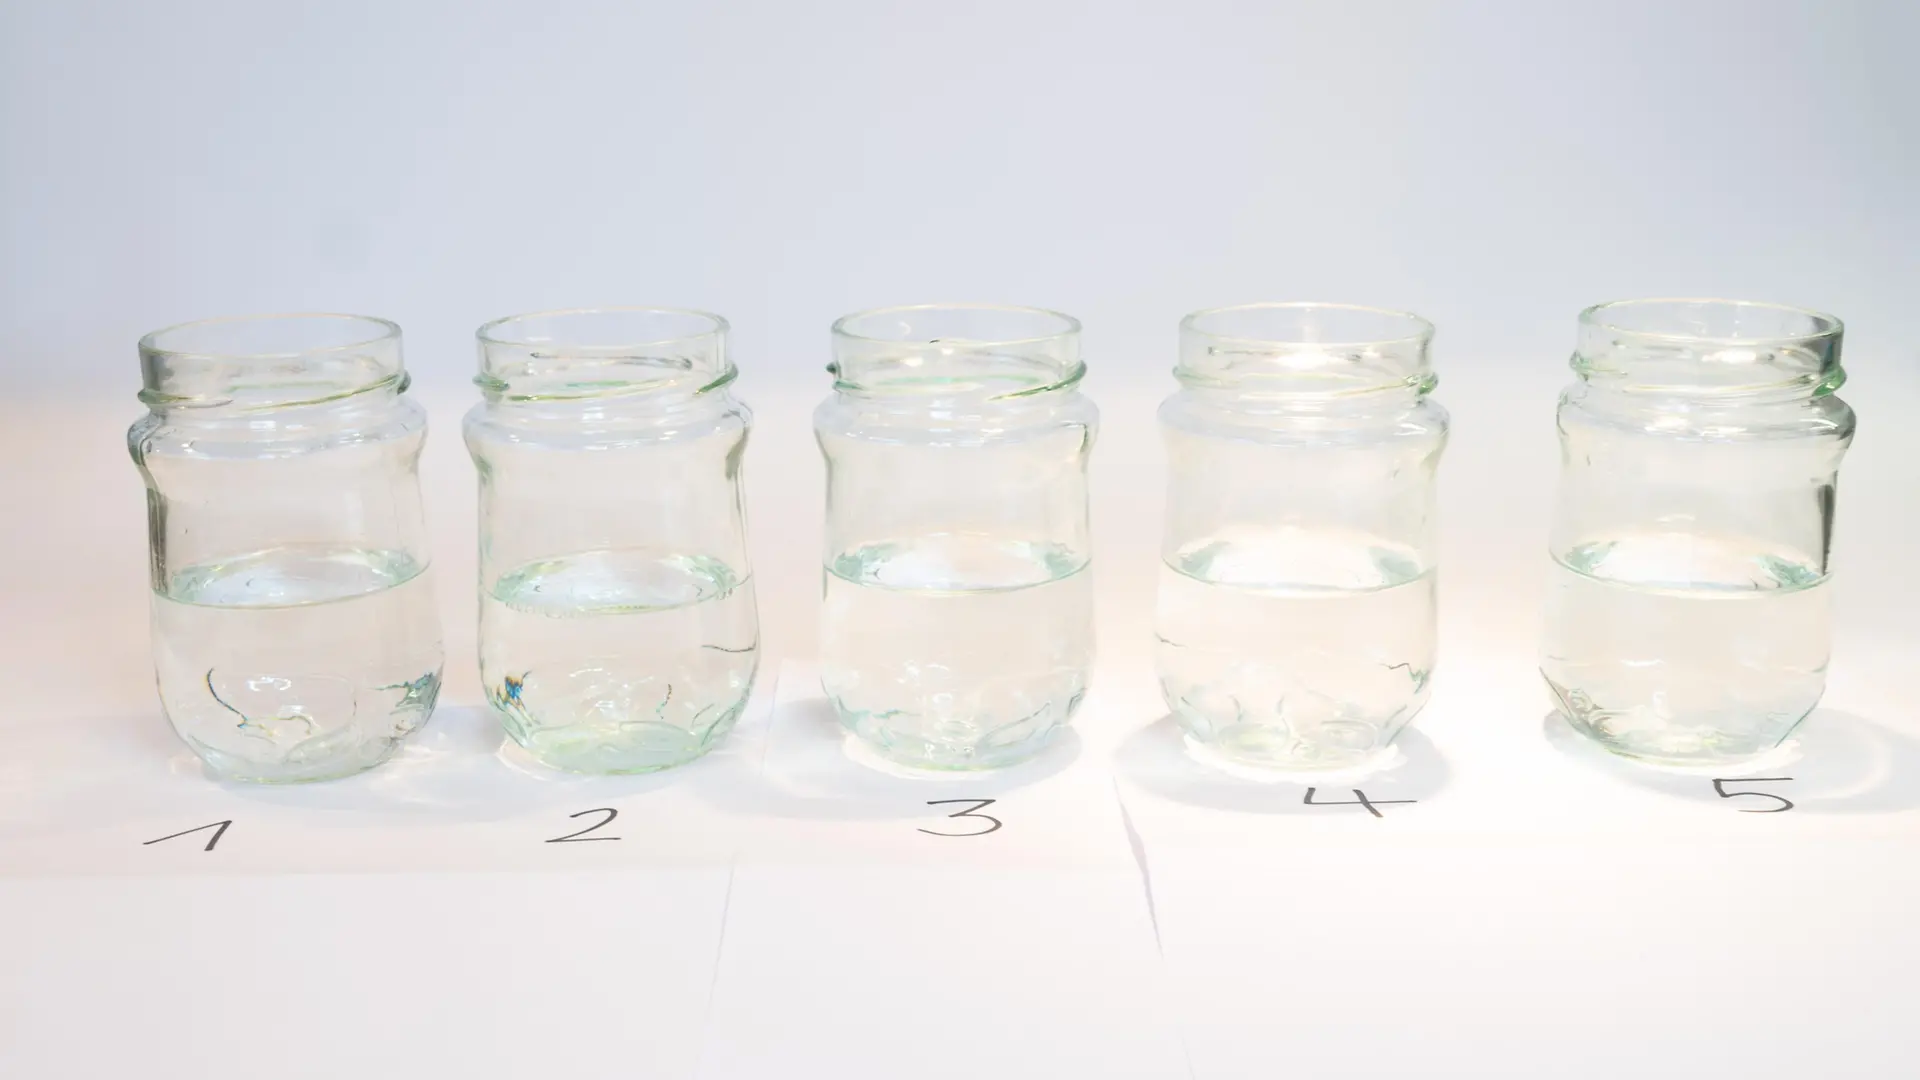 rząd pięciu szklanych słoików z klarownymi płynami